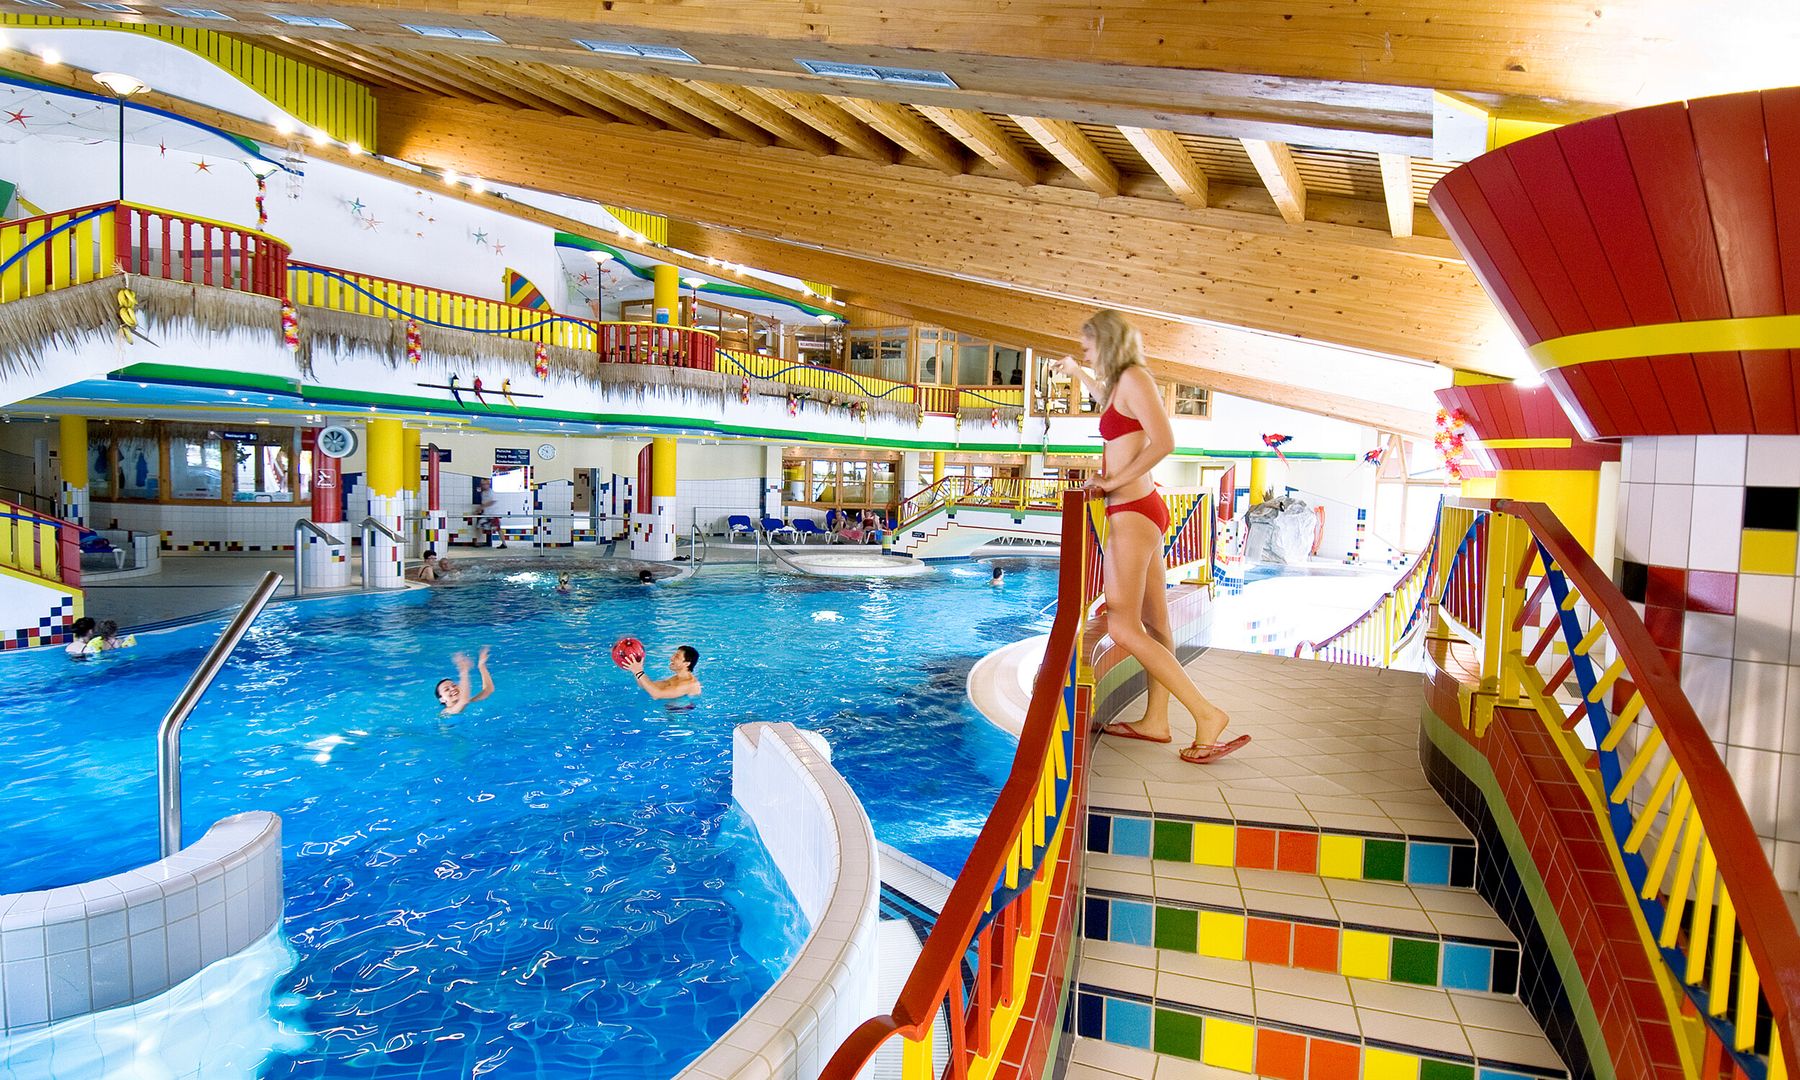 Das Erlebnisbad Mayrhofen bietet einen großzügigen Indoorpool für viel Badespaß.